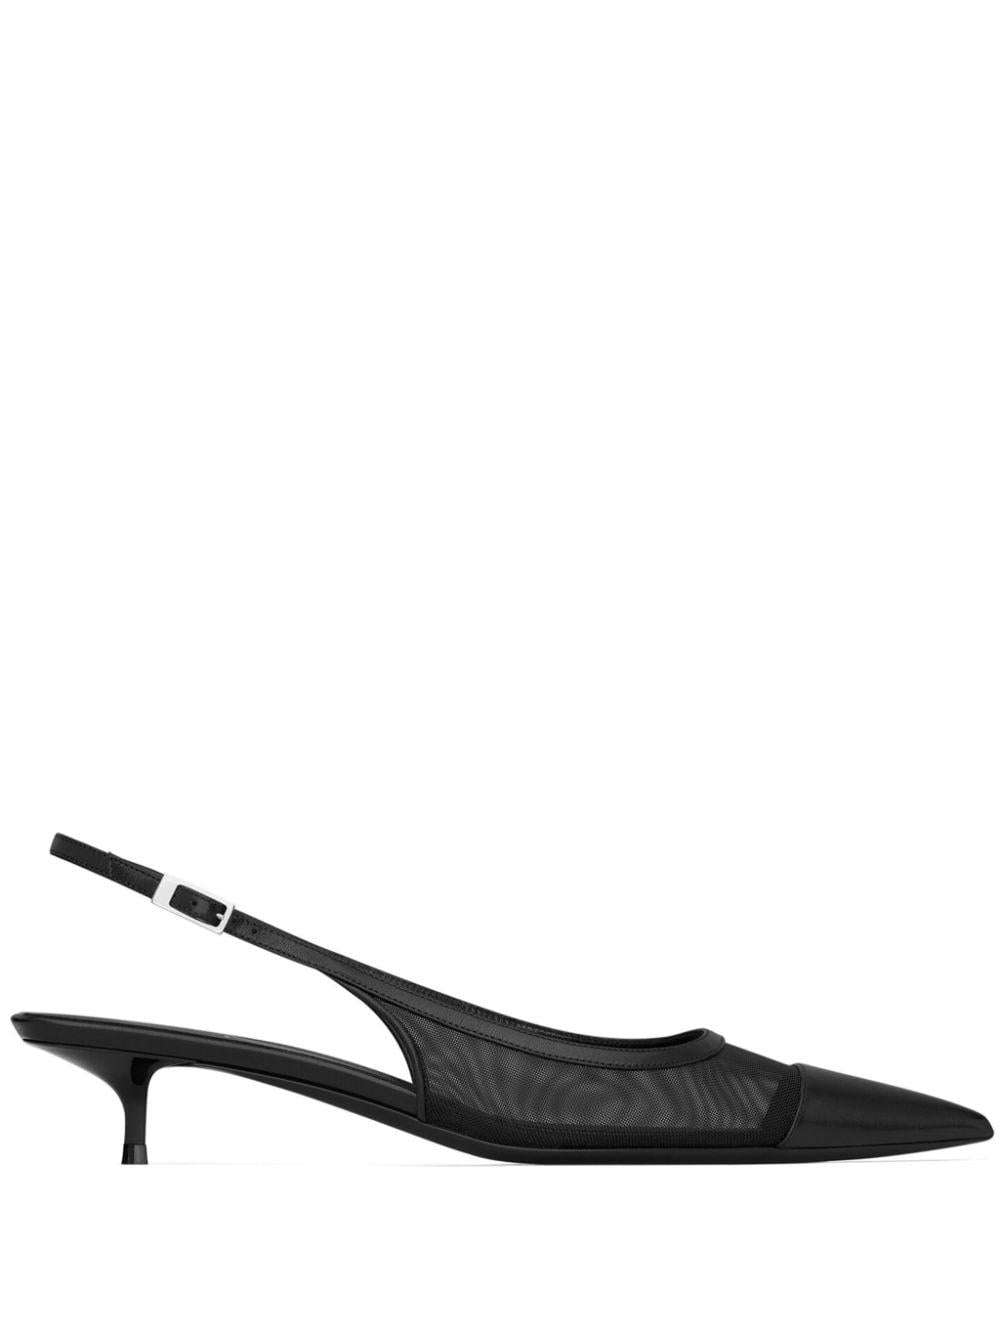 Giày cao gót đen cao cấp dành cho phụ nữ trong bộ sưu tập SS24